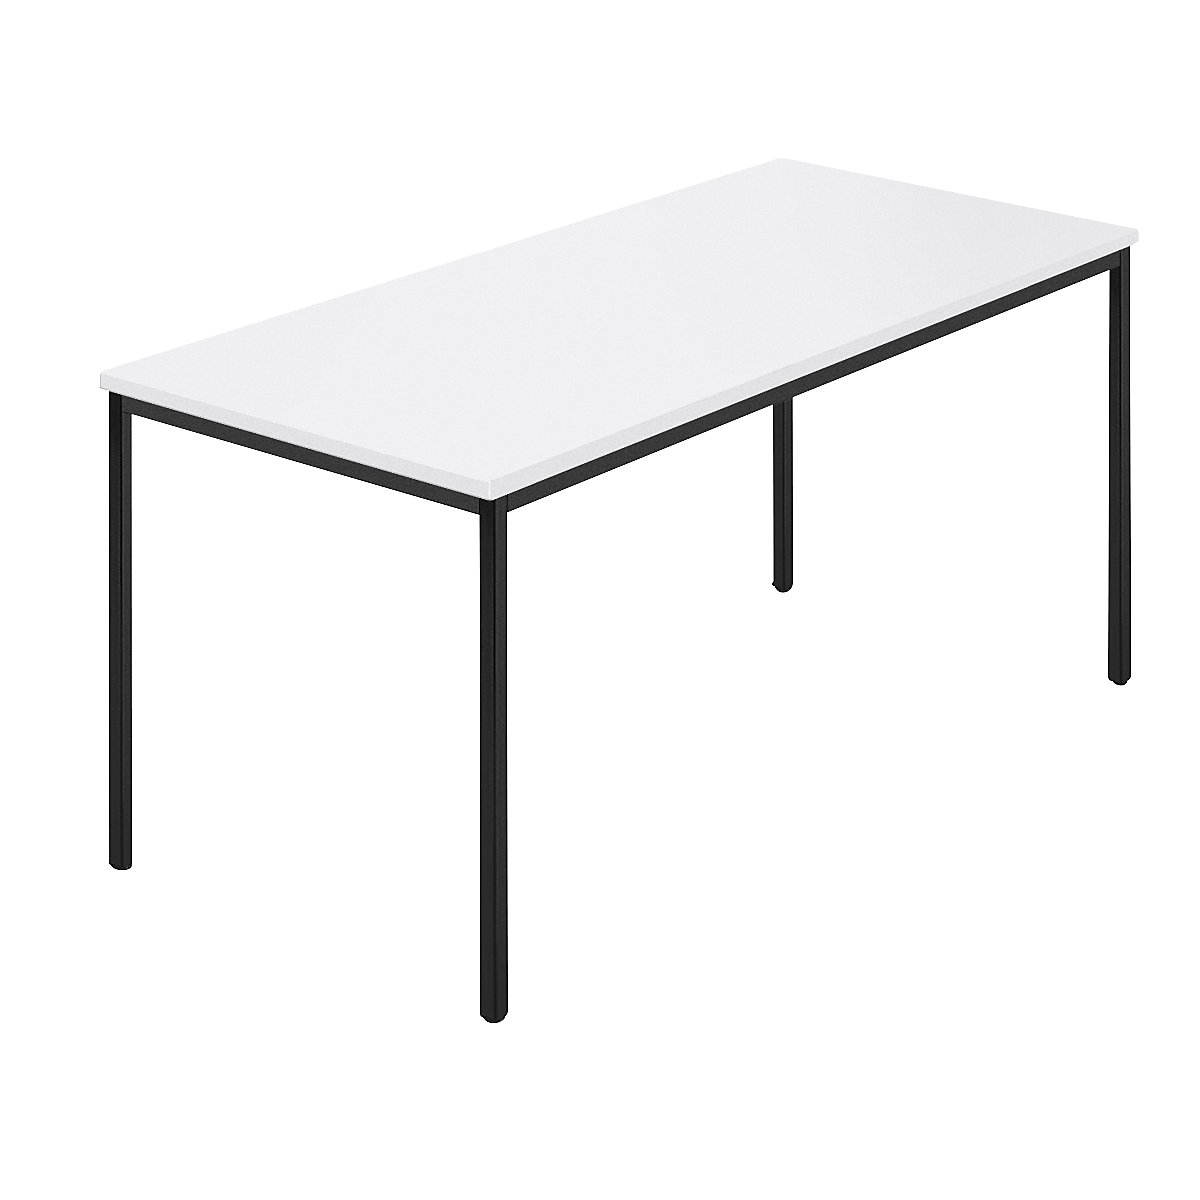 Table rectangulaire, tube carré plastifié, l x p 1500 x 800 mm, blanc / anthracite-7